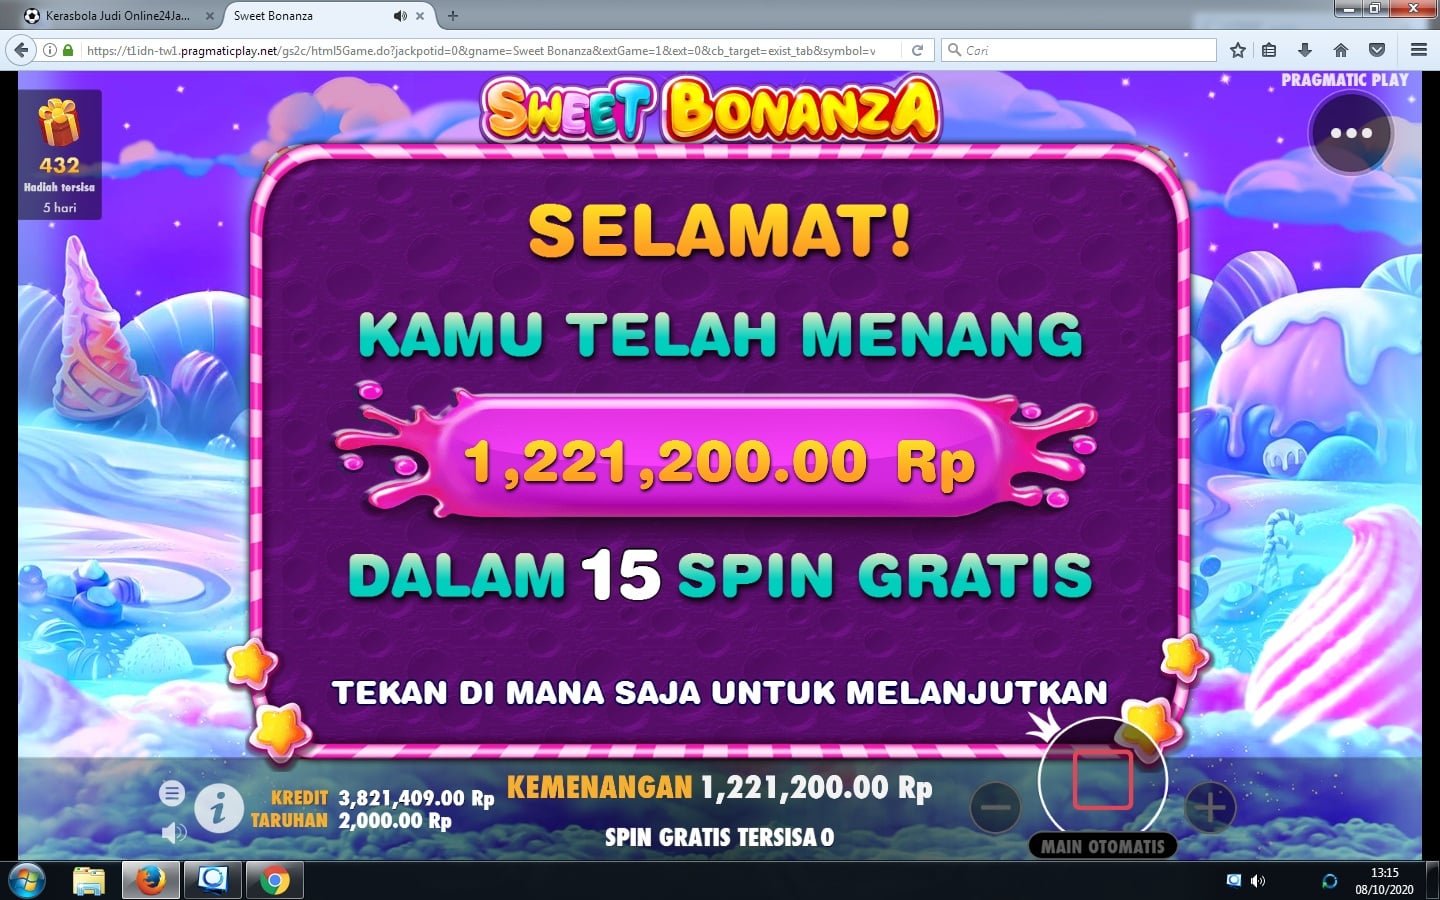 Tips Menang Slot Online berhadapan dgn MESIN !!